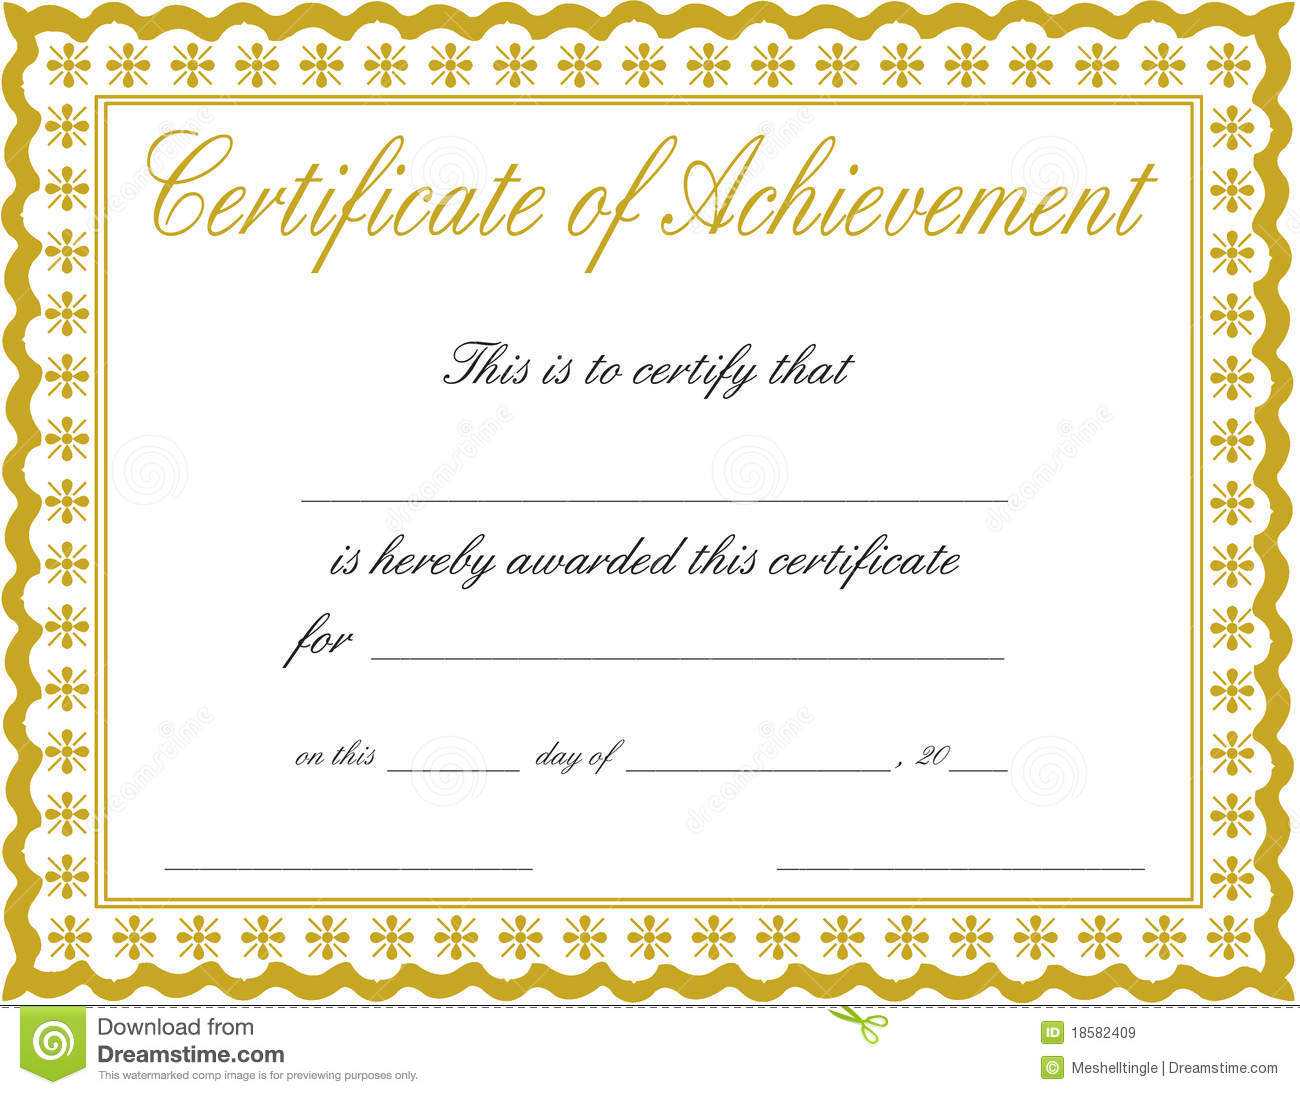 Docx Achievement Certificates Templates Free Certificate Of Inside Free Printable Certificate Of Achievement Template